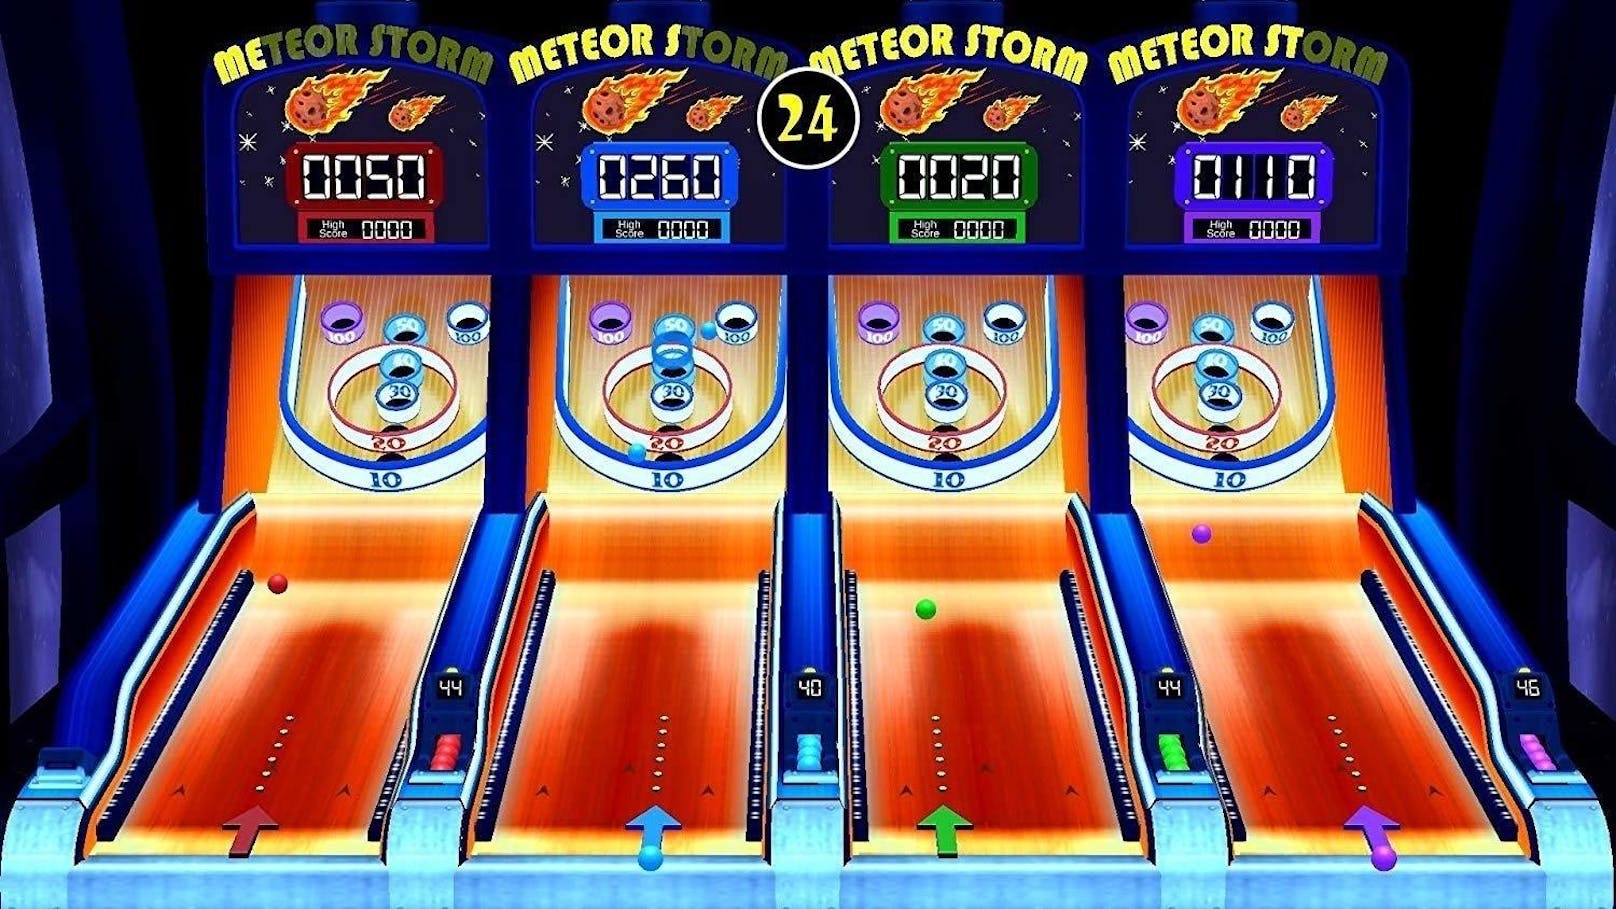 In dem Spiel "Lichtgeschwindigkeit" übernimmt man etwa die Kontrolle über eine Drohne, die durch einen Tunnel manövriert werden muss. Woanders geht es eher klassisch zu, etwa beim  Basketbälle abschießen ("Basktet-Ballaballa"), Bowling oder Niederstrecken von unfreundlichen Clowns ("Clown-Parade").